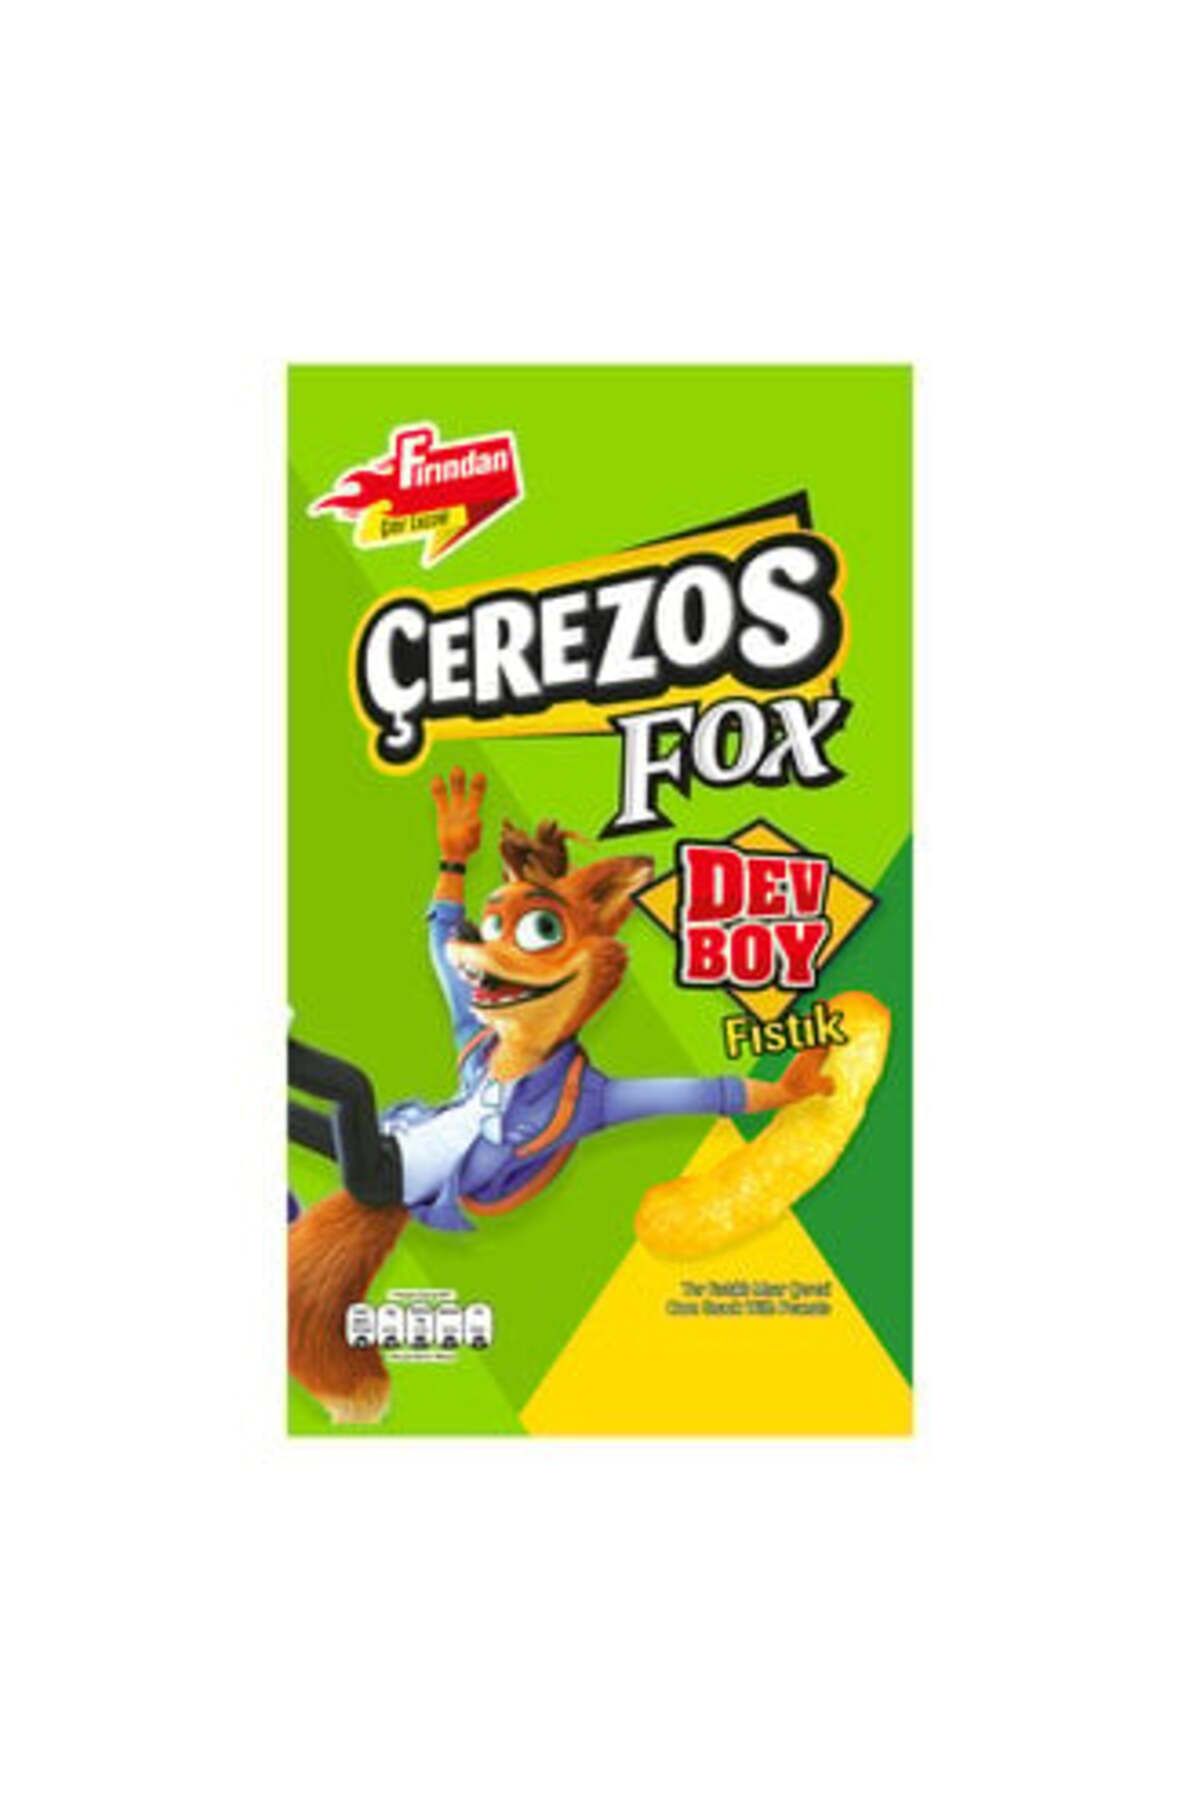 Çerezos Fox Dev Boy Fıstıklı Mısır Çerezi 150 G ( 2 ADET )